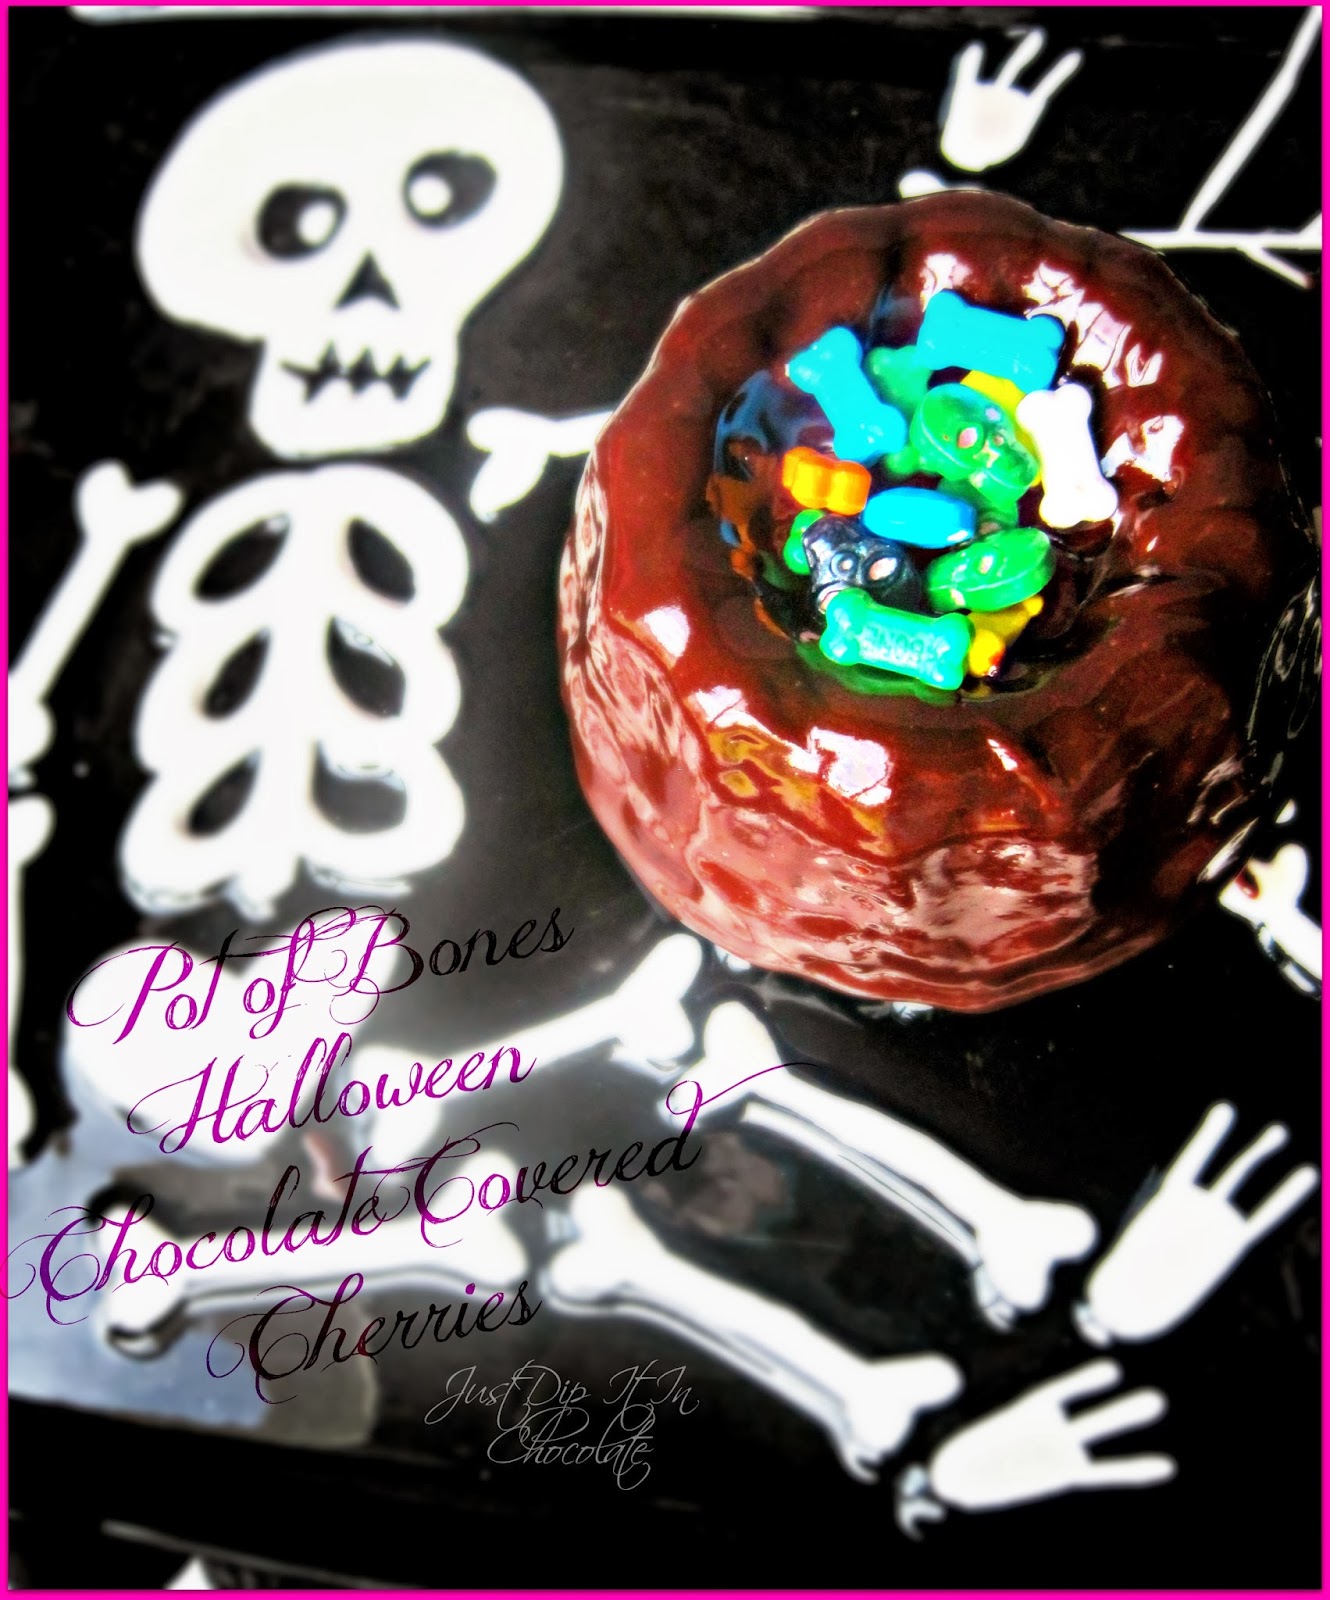 halloween bundt cake Halloween Chocolate Covered Cherries Bundt Cake Recipe, Halloween 